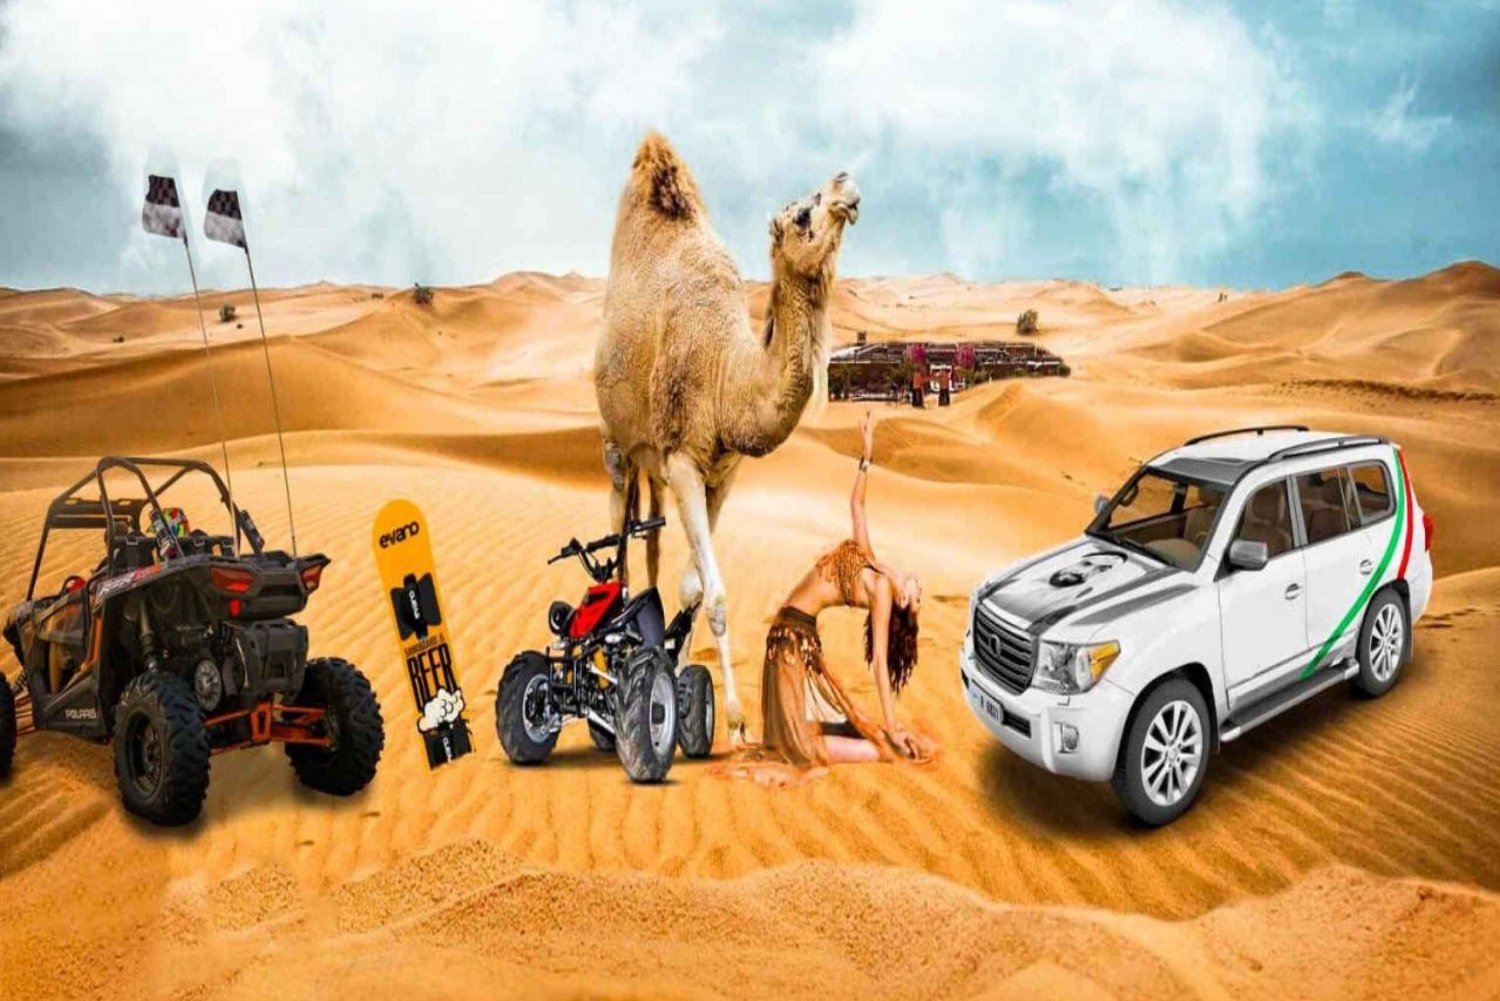 Ørkensafari i Dubai, sandboard, grill, kamelridning og shows